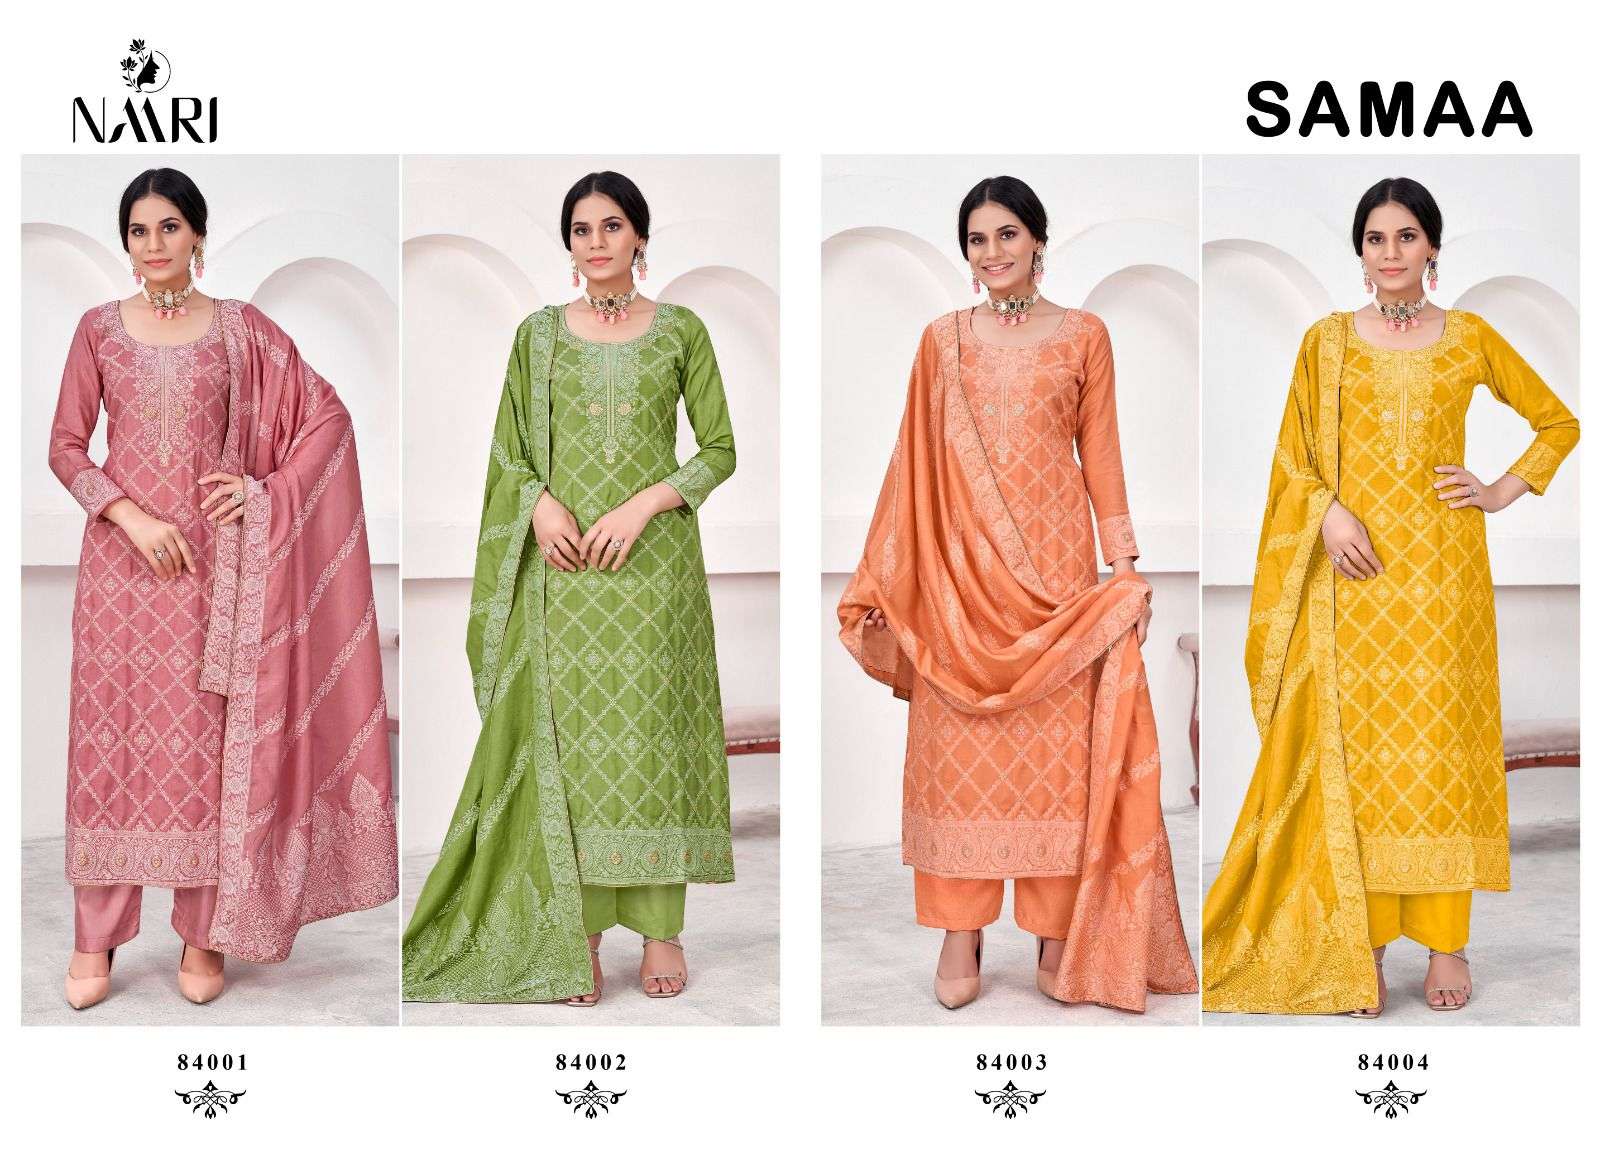 NAARI SAMAA Salwar Kameez Wholesale catalog